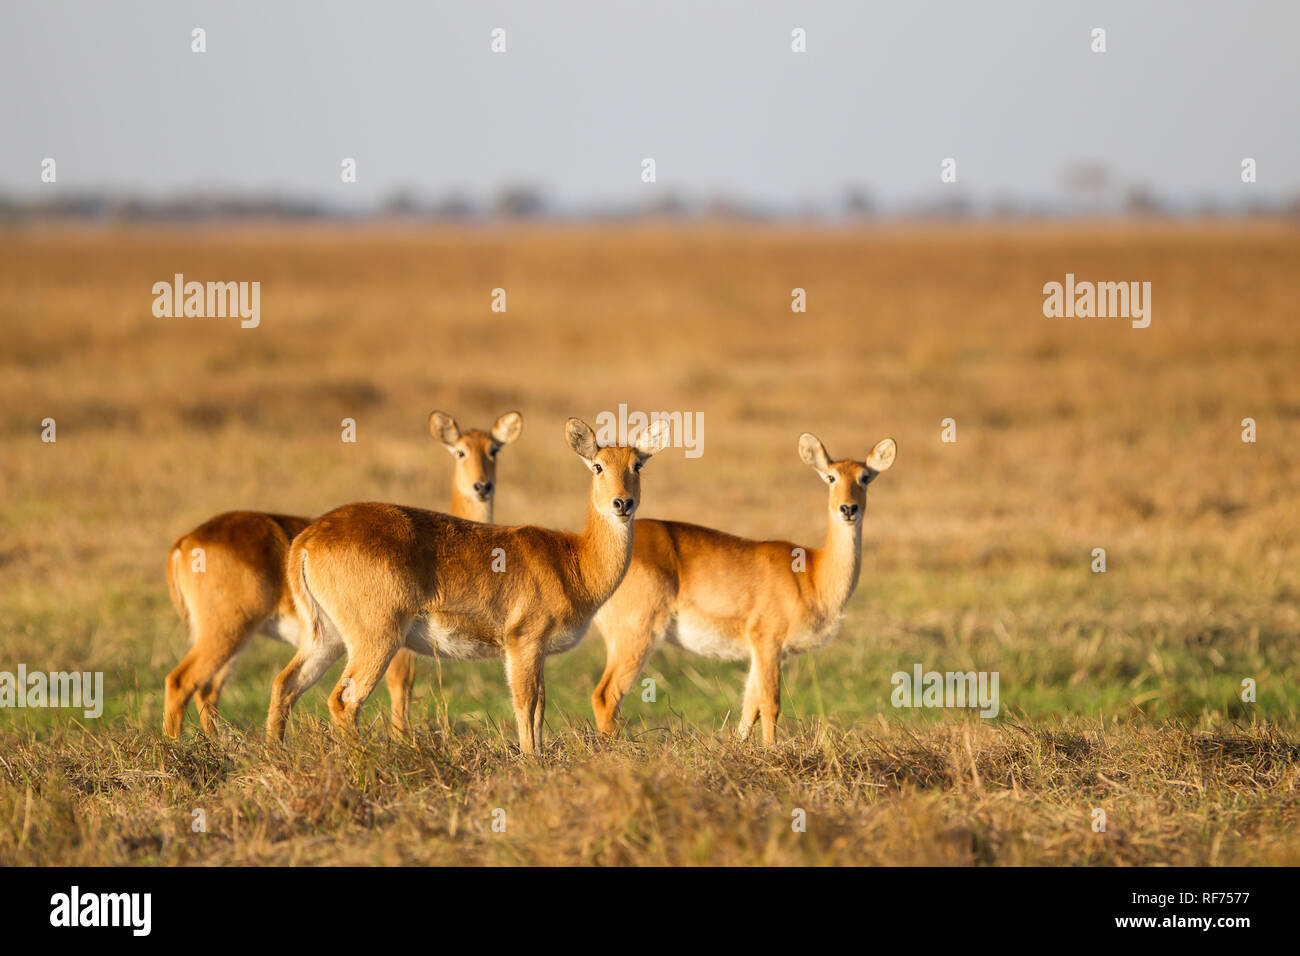 Puku, Kobus vardonii, sono una specie di antilope minacciata a causa della diminuzione dell'habitat; prosperano nelle praterie umide nel Parco Nazionale di Kafue, Zambia Foto Stock